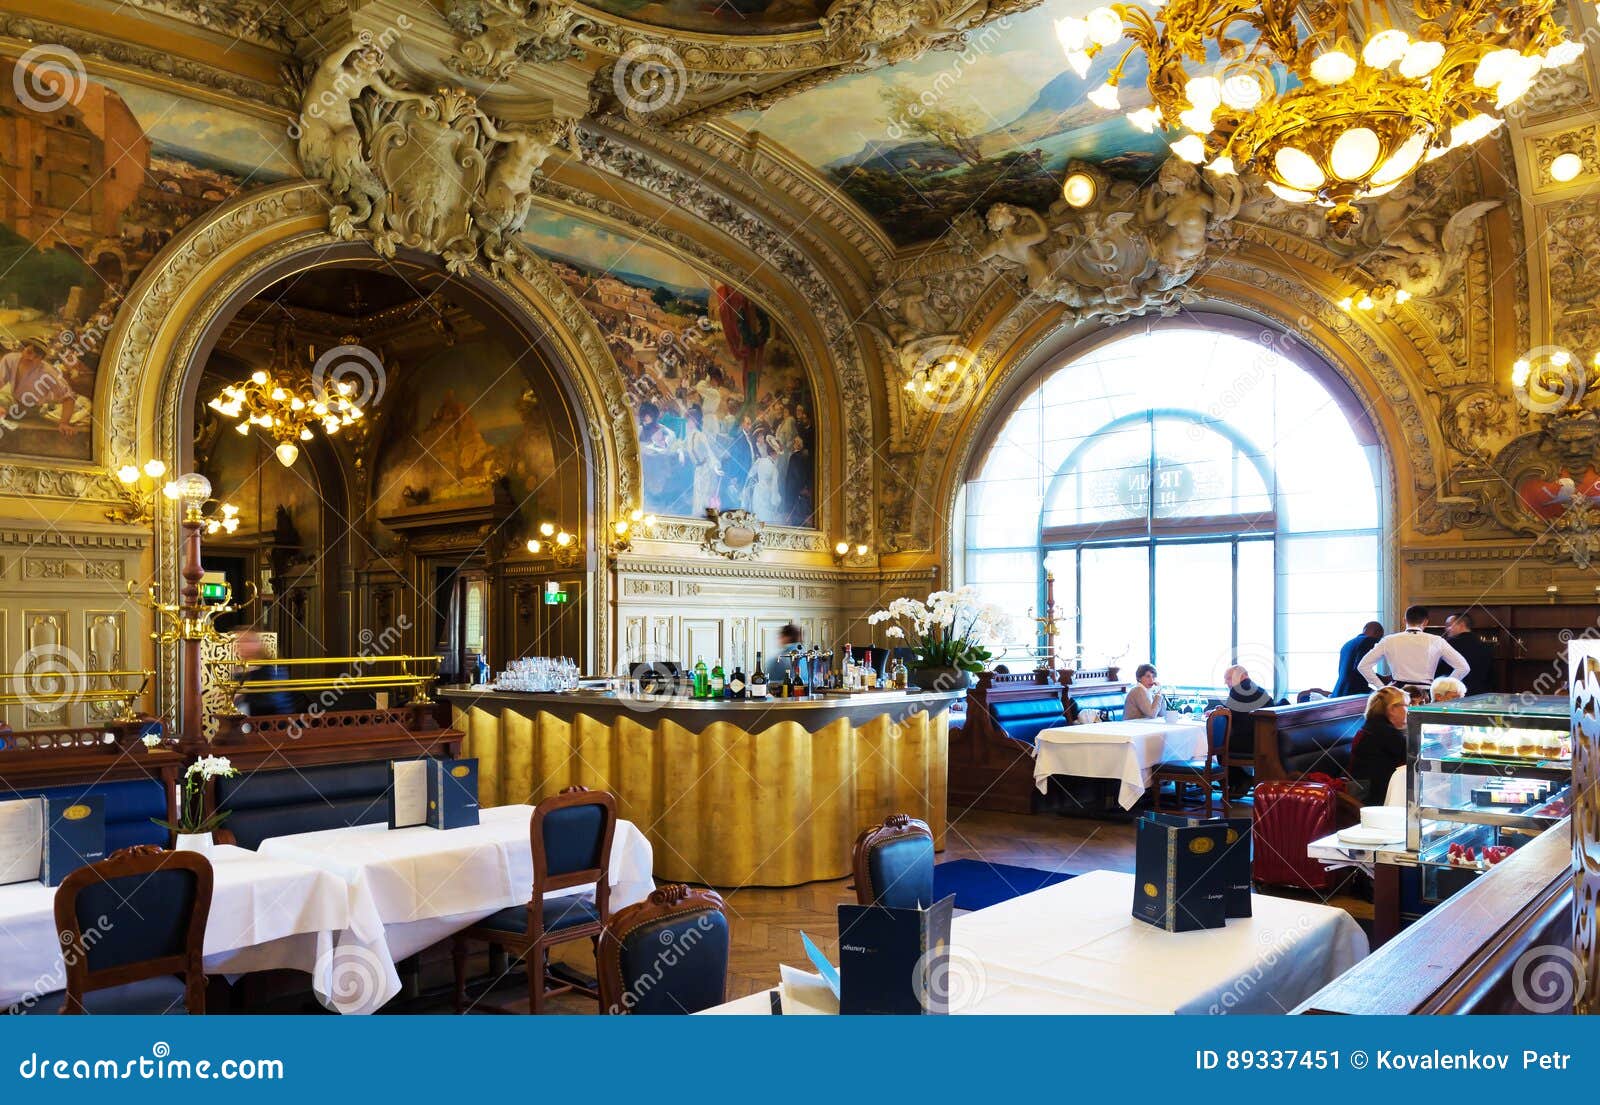 The famous Train Bleu restaurant at Paris Gare de Lyon